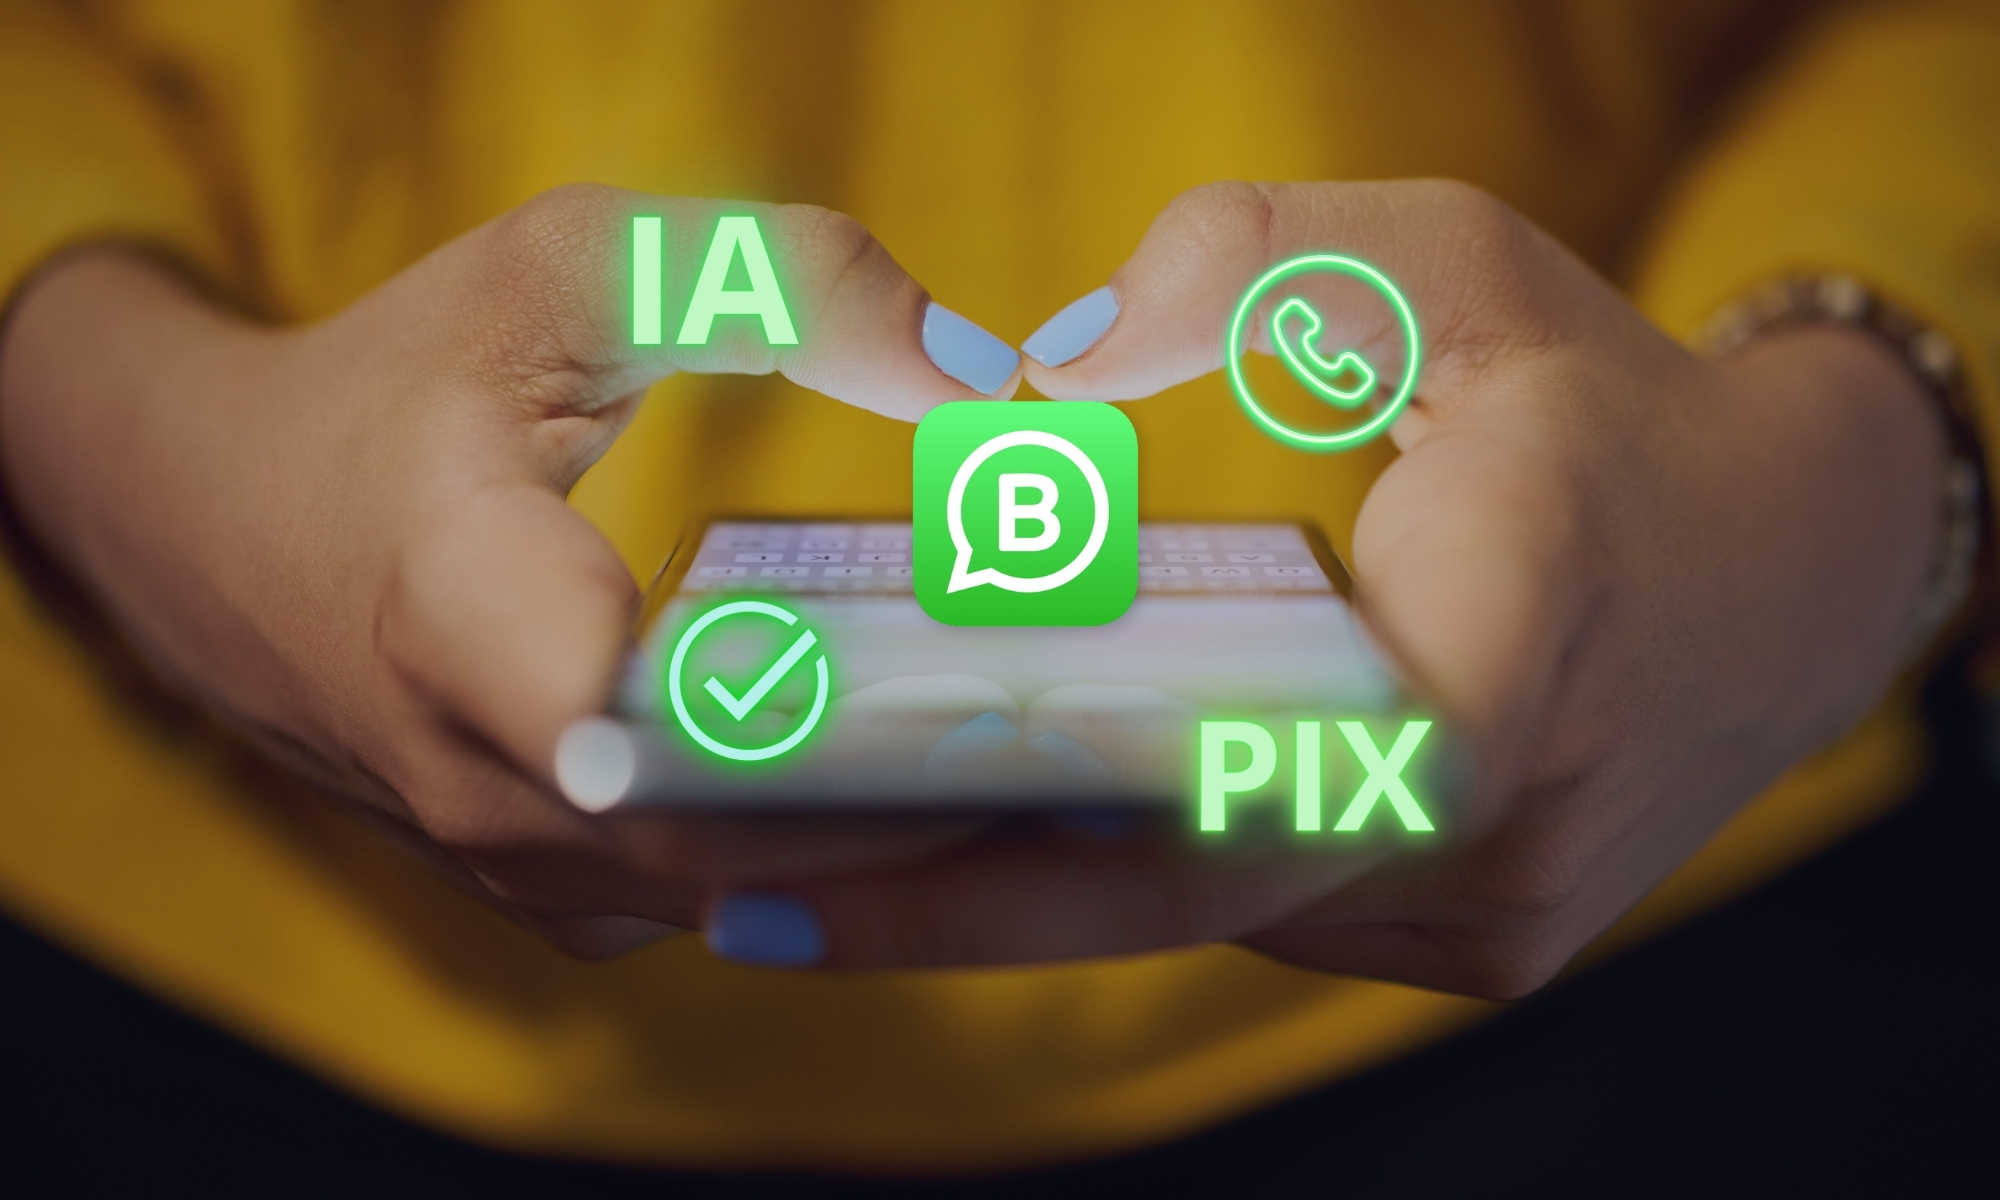 Novidades no Whatsapp Business: IA, Pix e muito mais!